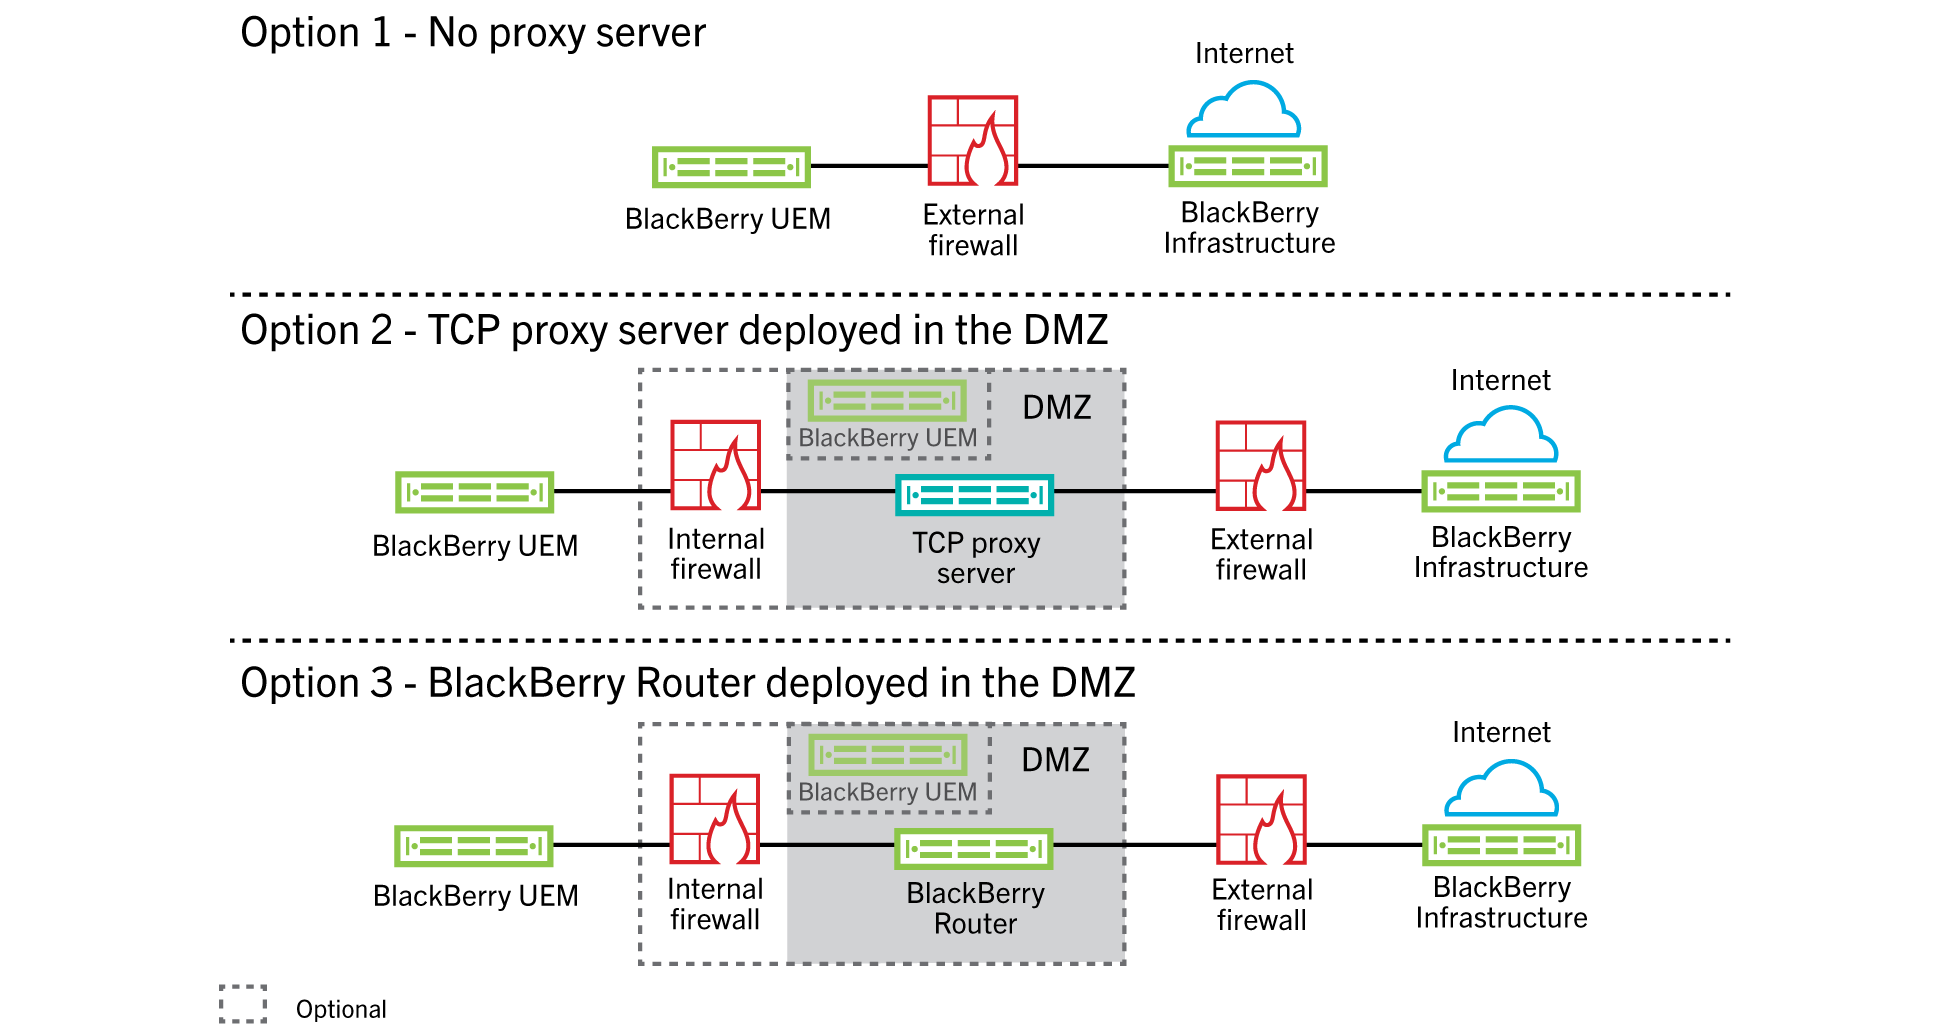 画像は、プロキシサーバーなし、TCP プロキシサーバーの DMZ への展開、および BlackBerry UEM の DMZ への展開を実行するために設定された BlackBerry Router を示しています。